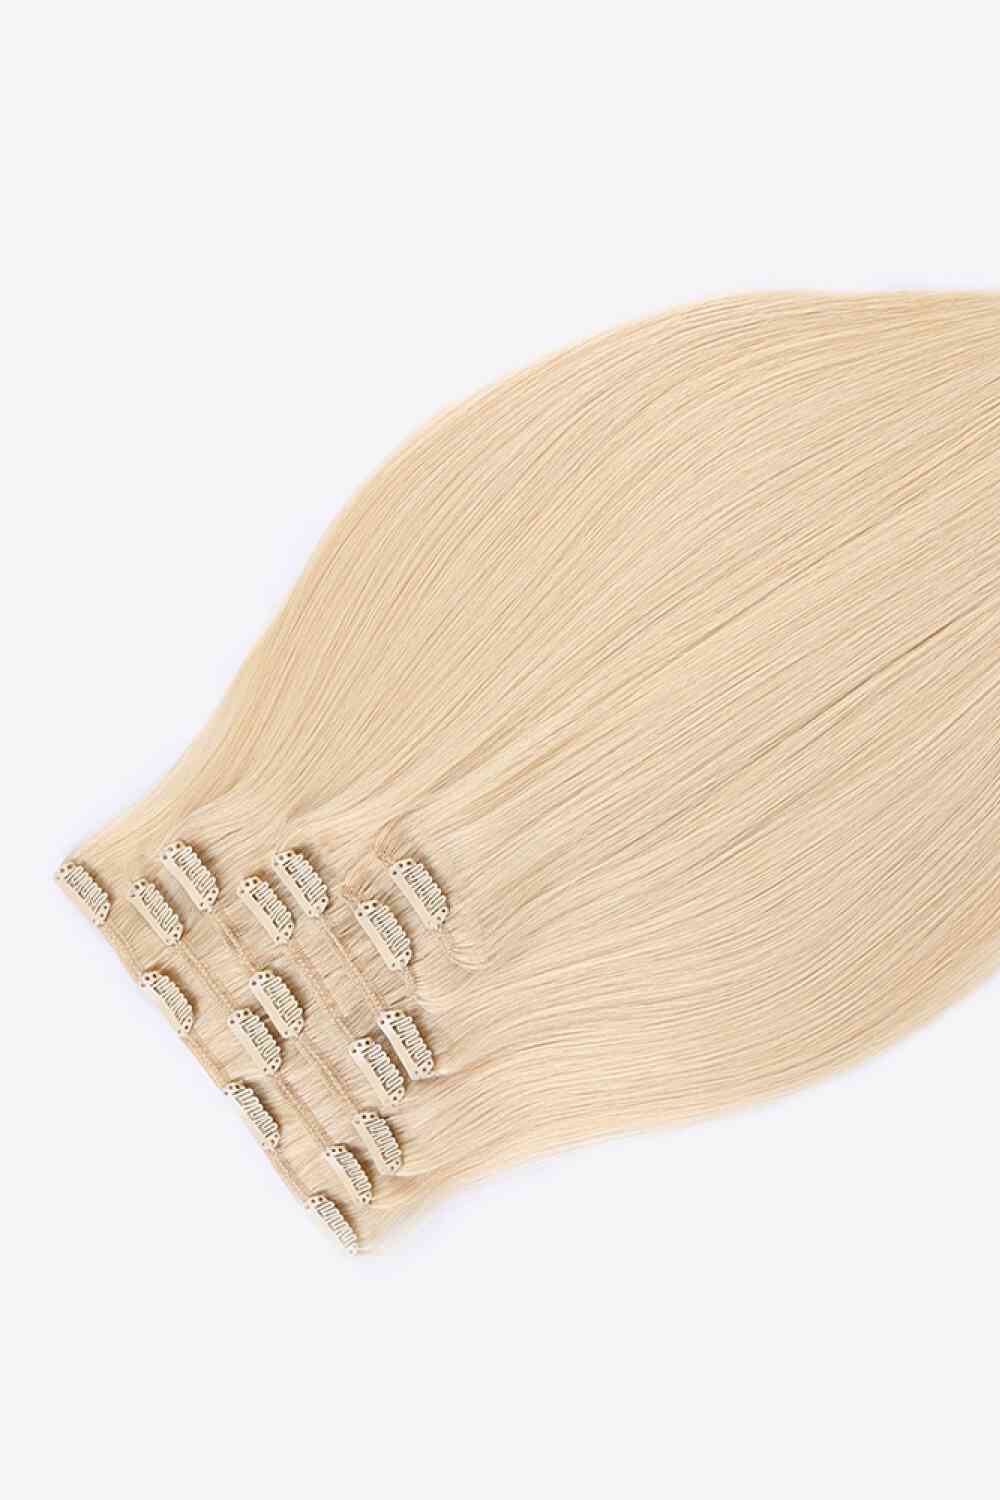 Extensiones de cabello con clip de 20" y 120 g, cabello humano indio en rubio